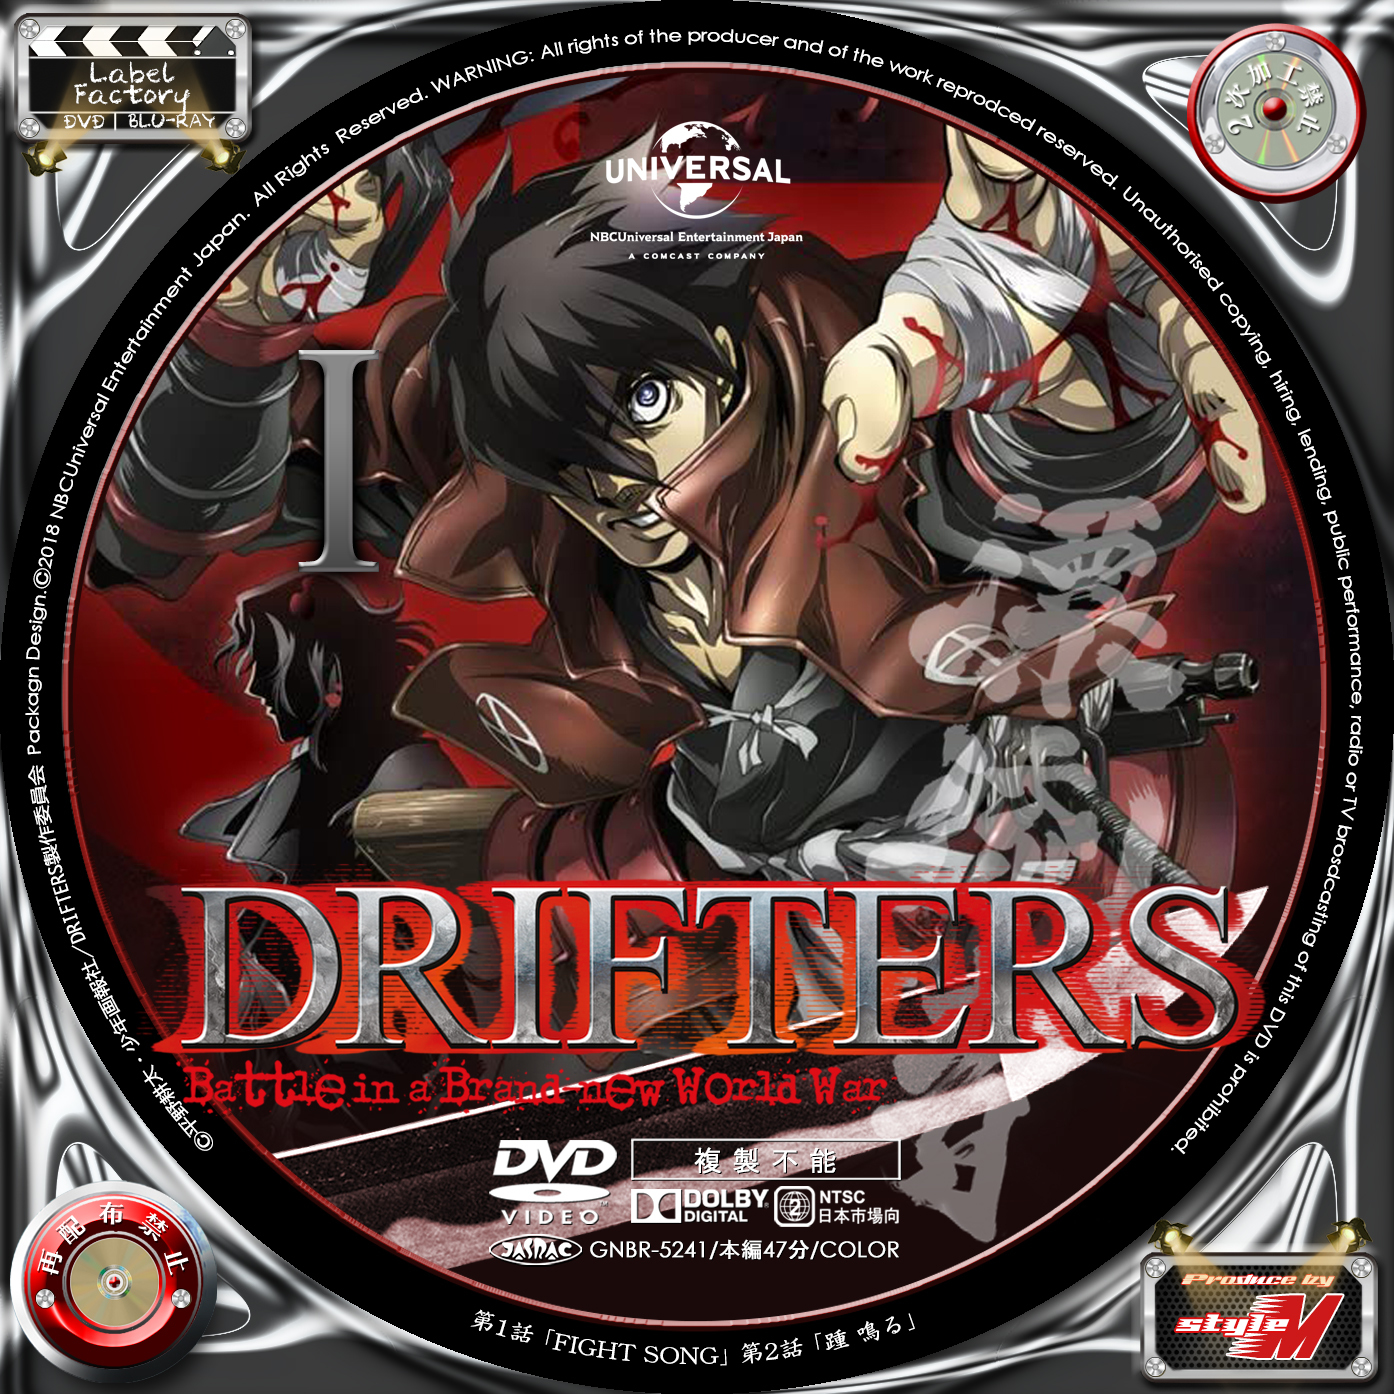 Drifters ドリフターズ Vol 1 Label Factory M Style 自作dvd レーベル ラベル